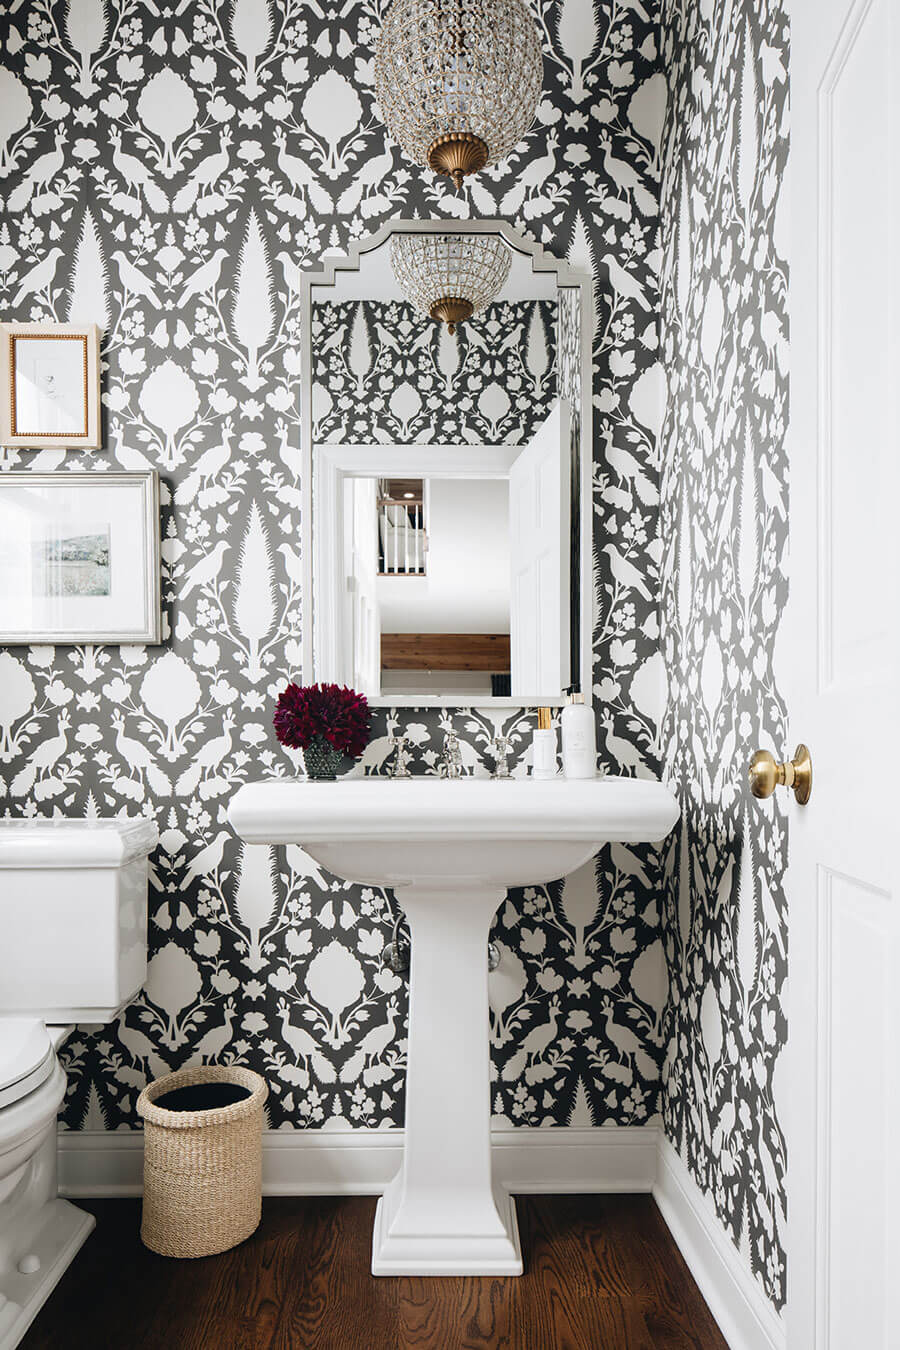 Baño con papel mural con patrones blancos sobre negro estilo vintage. El inodoro, lavamanos y la puerta son blancos. Hay un espejo con marcos plateados y una lámpara colgante con cristales.